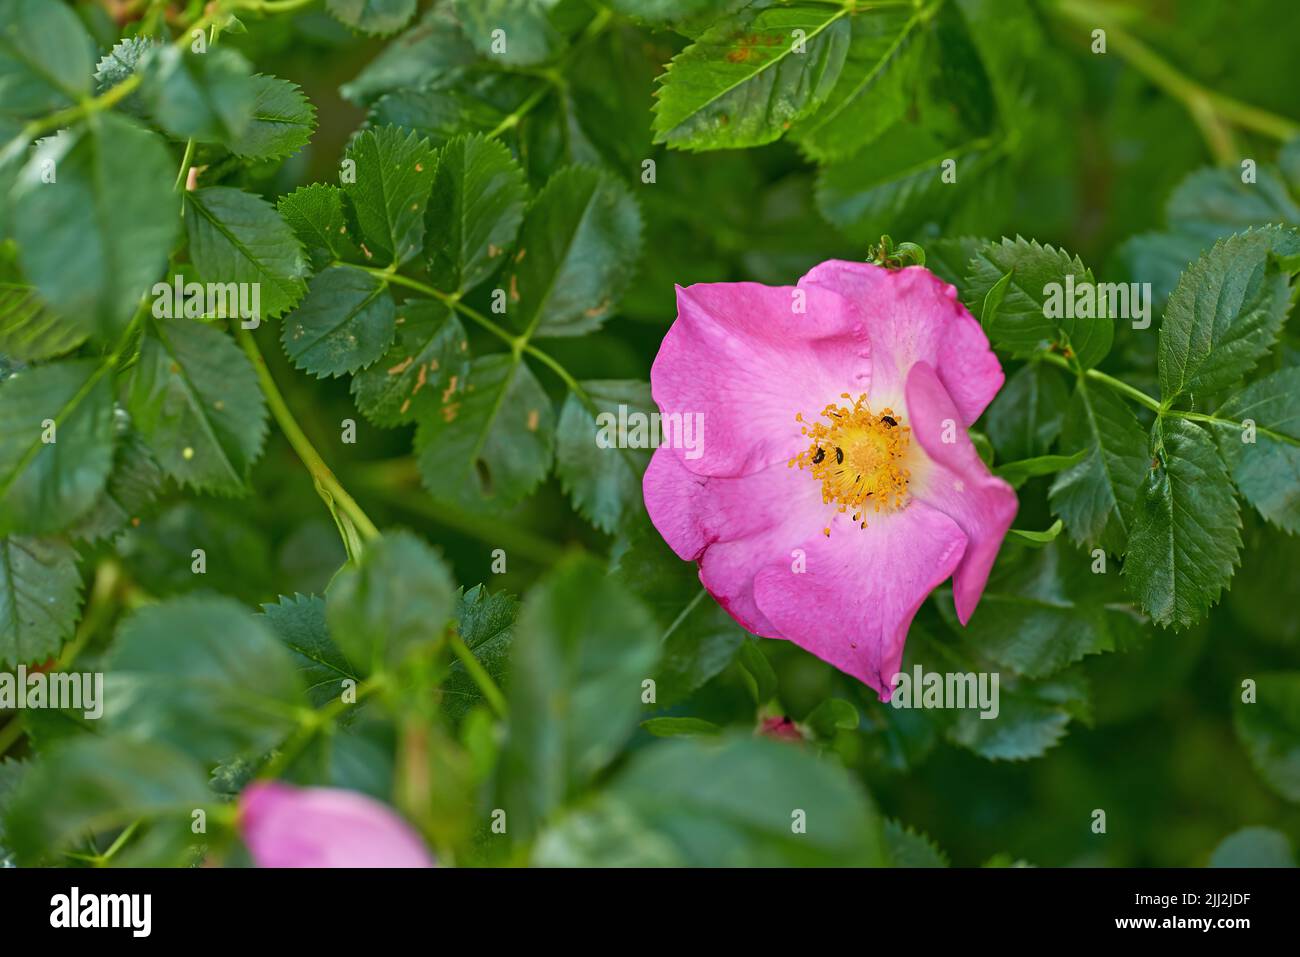 Rosa selvaggia pungente con insetti afidi neri che si nutrono di polline in un giardino. Primo piano di una graziosa pianta rosa fiorente che fiorisce tra le foglie vibranti Foto Stock